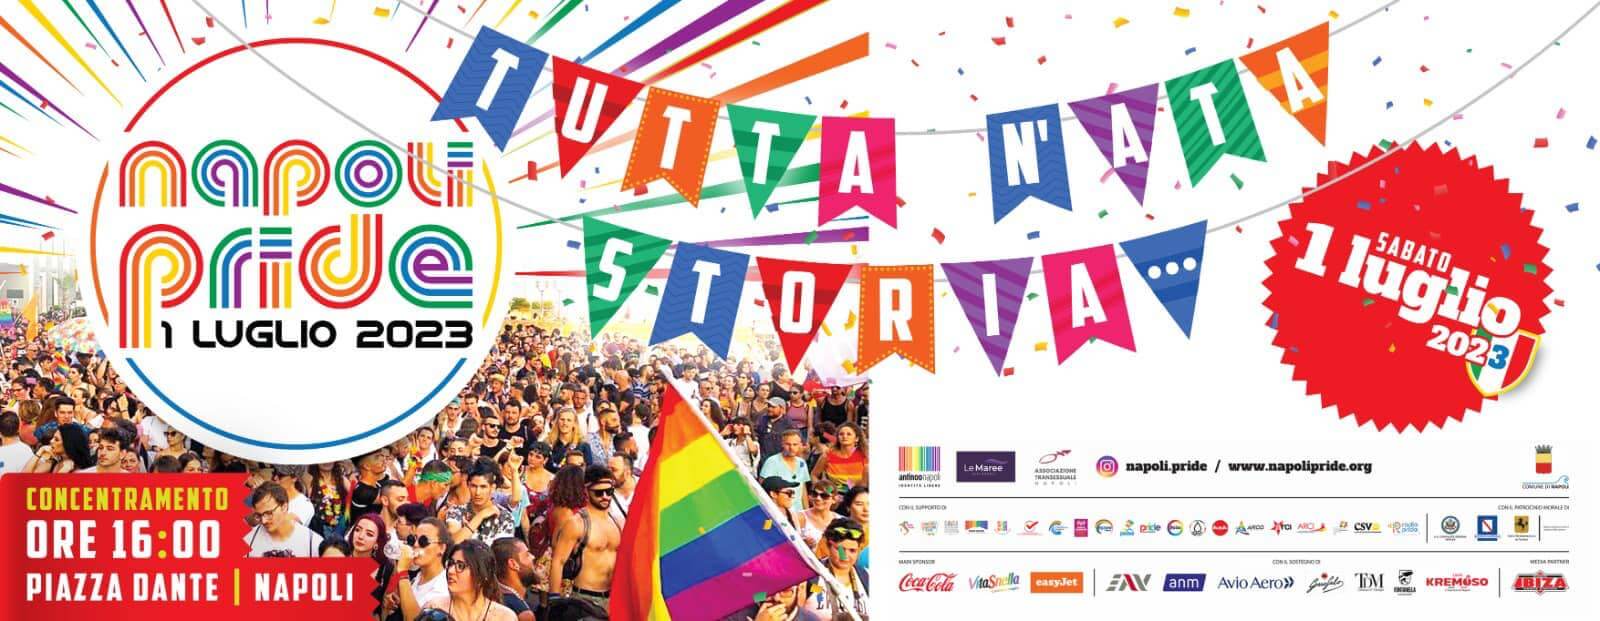 Napoli Pride 2023: "Contro le politiche violente del governo". Di Flora: "Spiace che altri Pride paghino gli artisti" - napoli pride 2023 - Gay.it